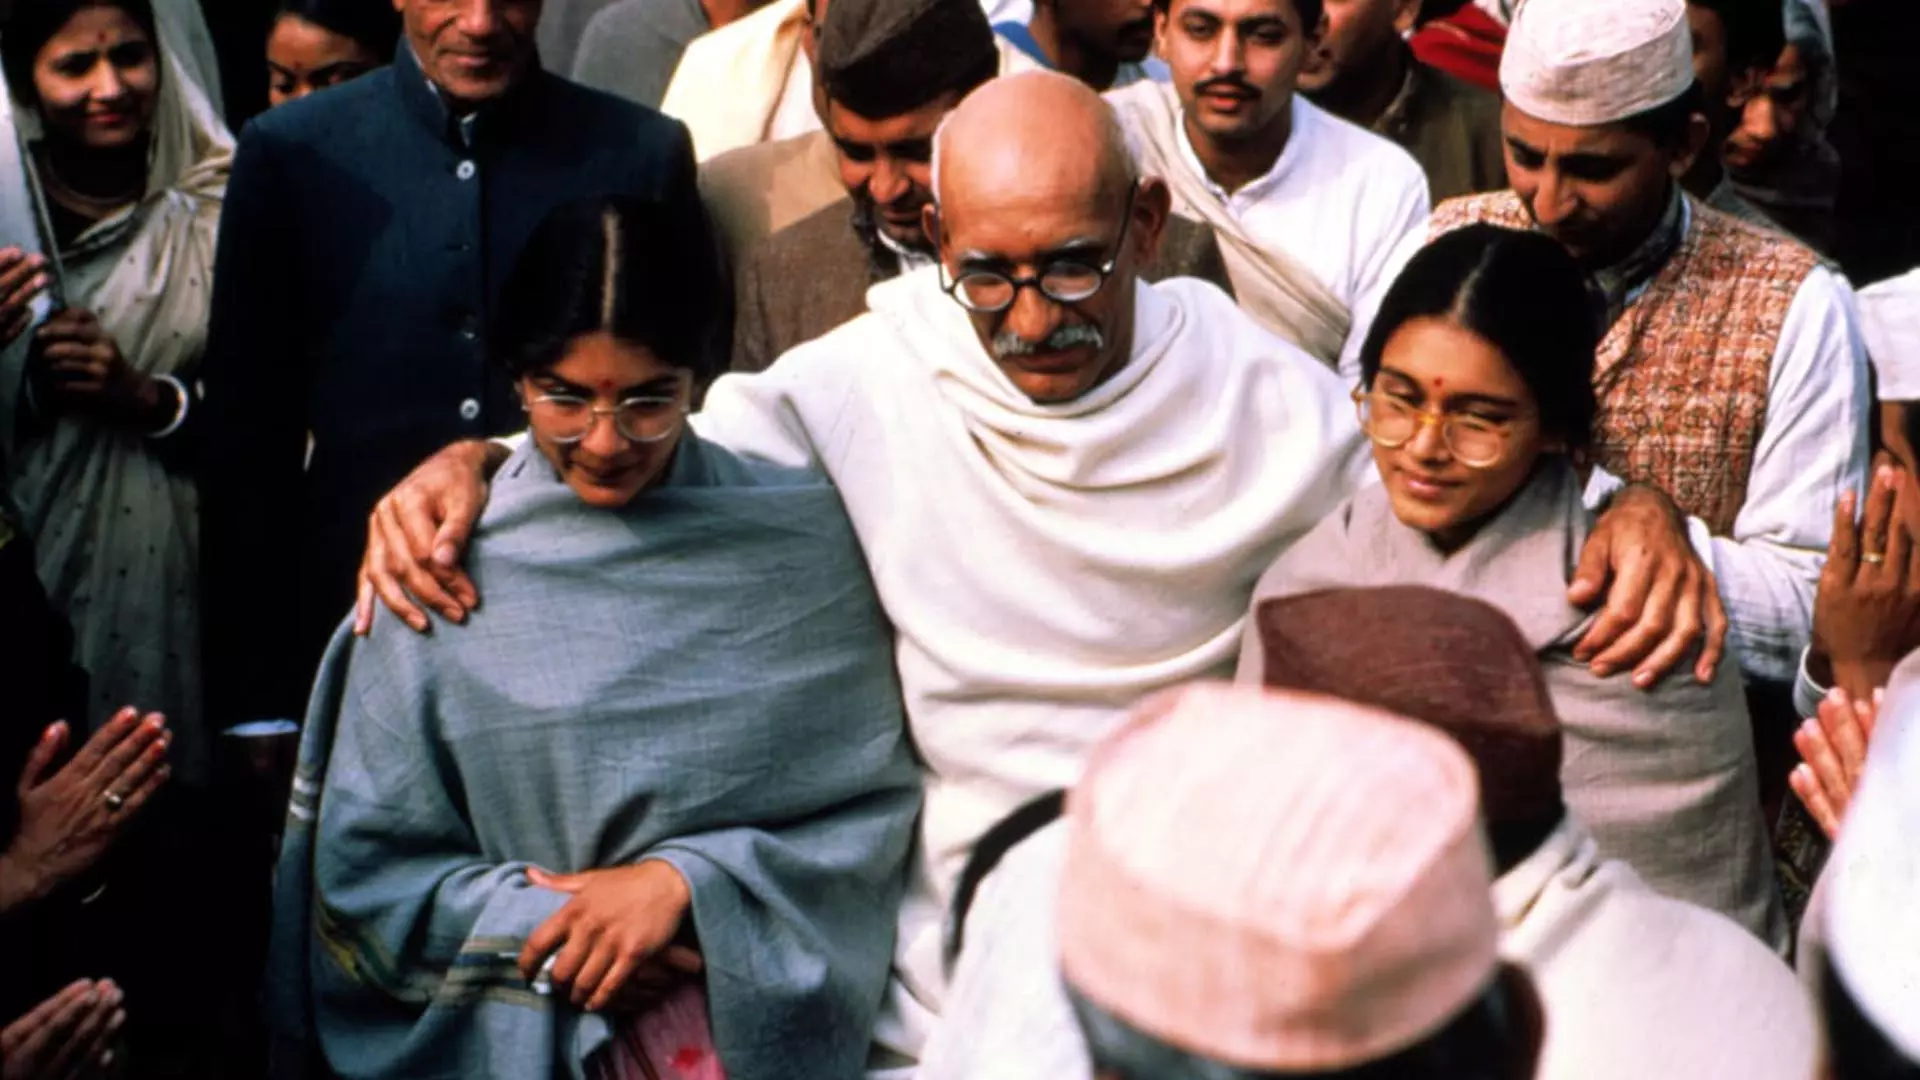 بن کینگزلی در نقش گاندی در میان طرفداران و پیروان خود در فیلم Gandhi